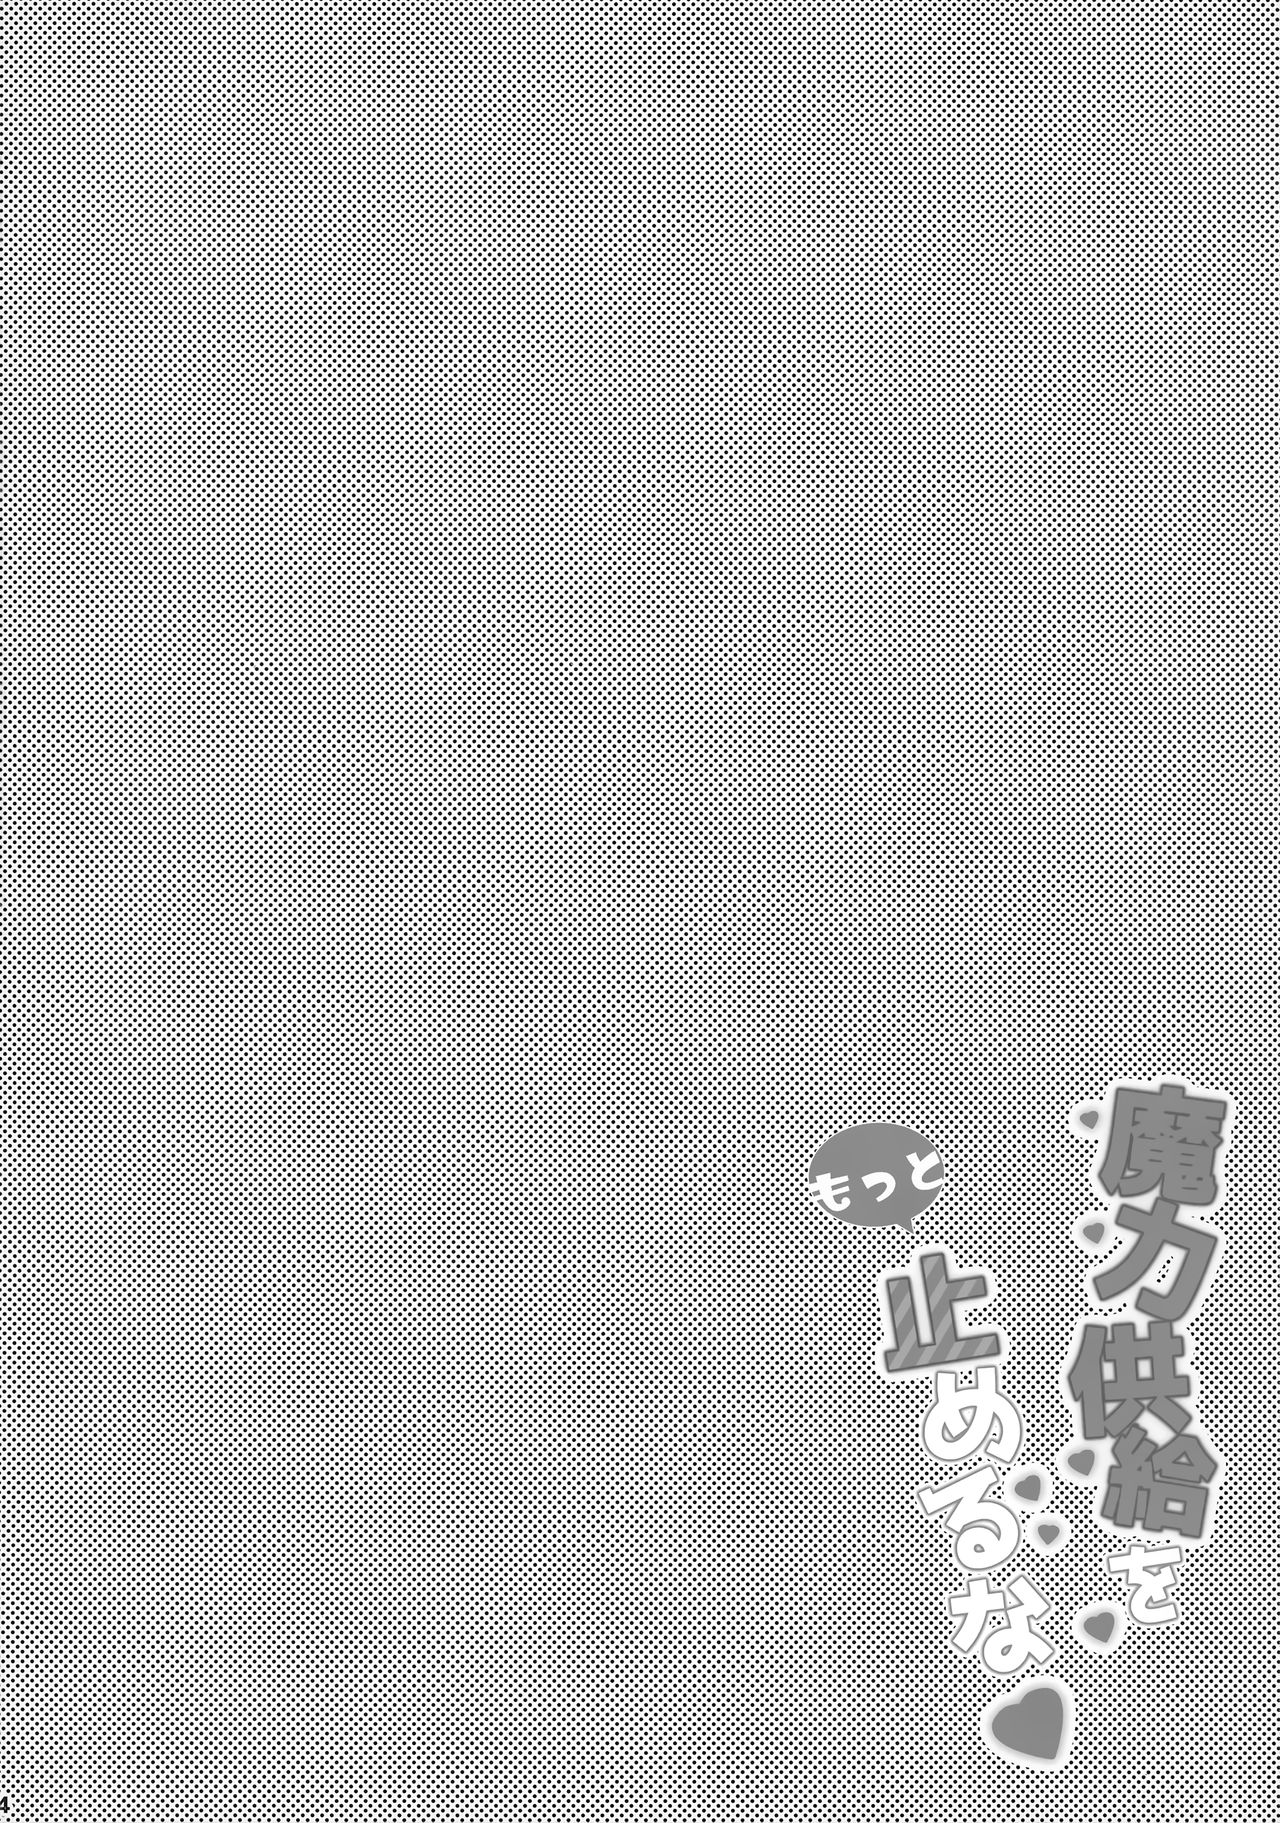 (サンクリ2019 Summer) [HappyBirthday (丸ちゃん。)] 魔力供給をもっと止めるな (Fate/Grand Order)